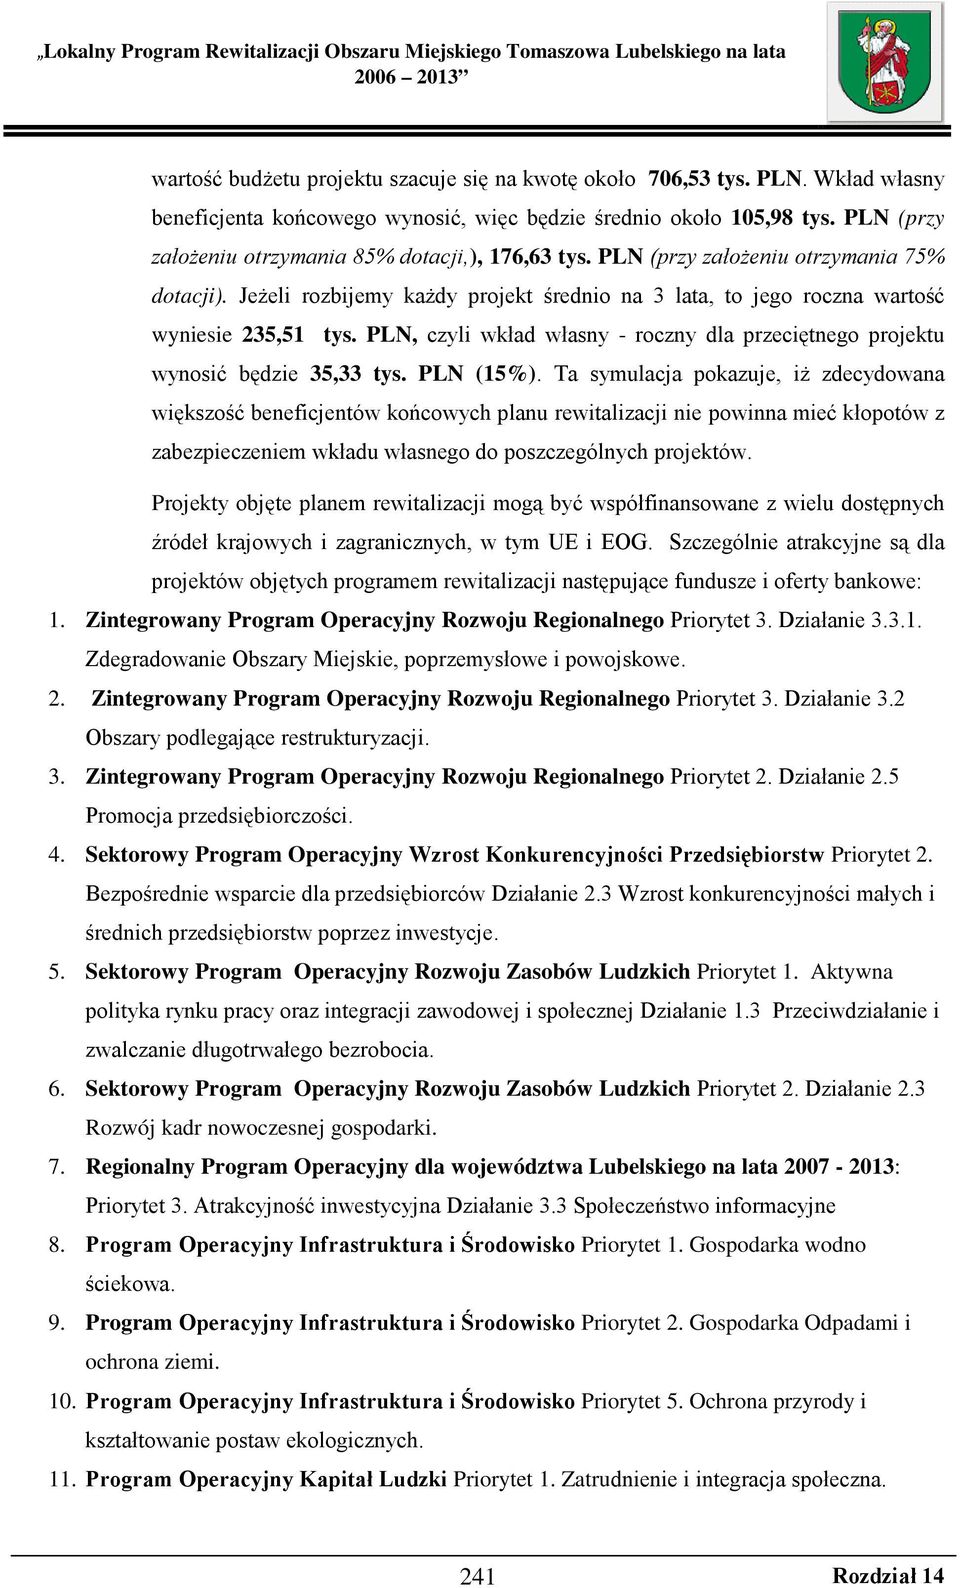 PLN, czyli wkład własny - roczny dla przeciętnego projektu wynosić będzie 35,33 tys. PLN (15%).